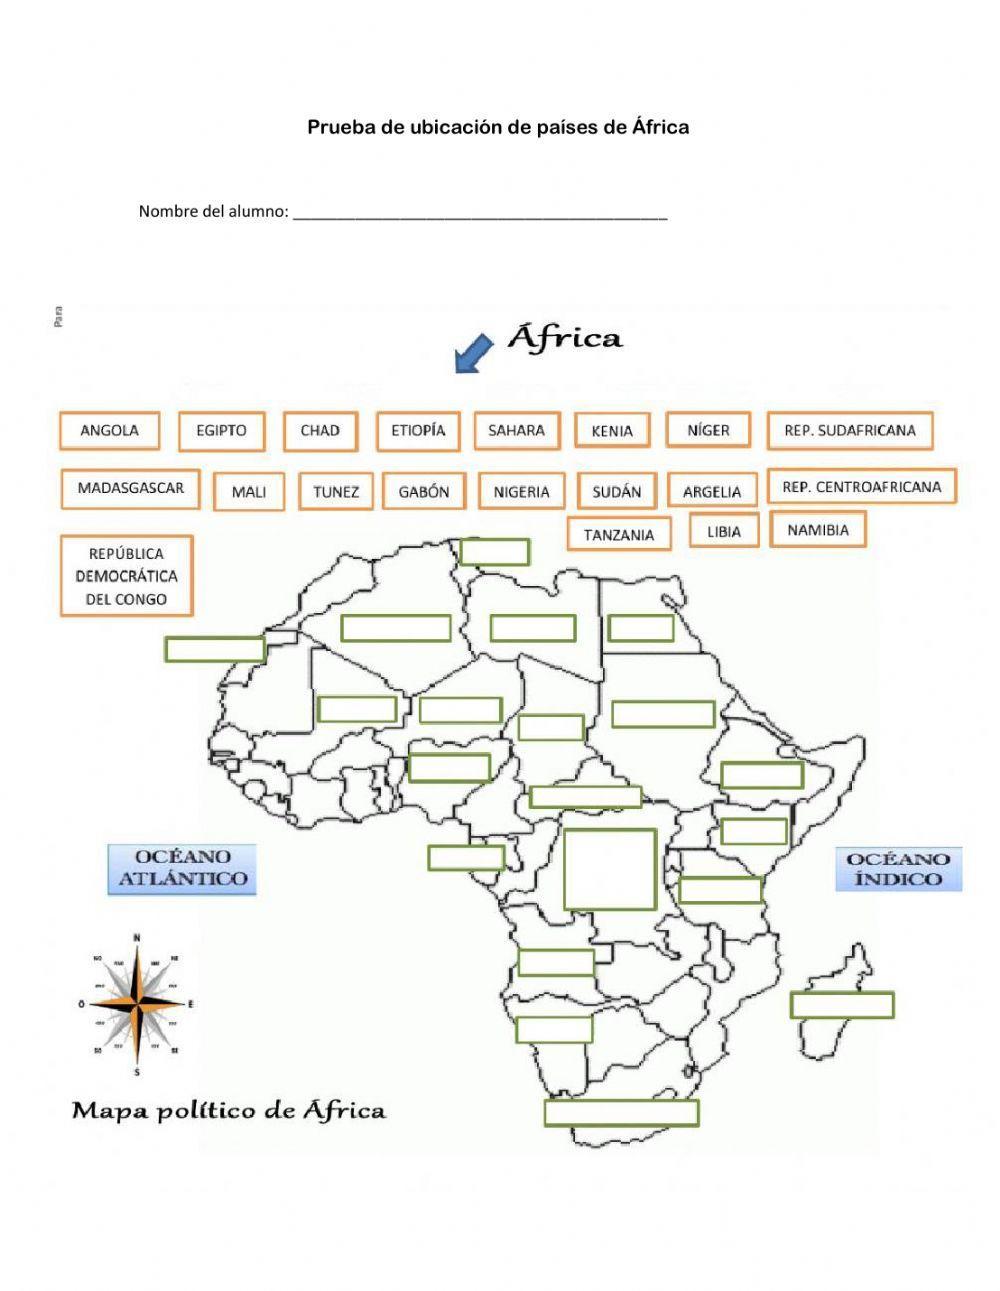 Prueba de ubicación de países de África